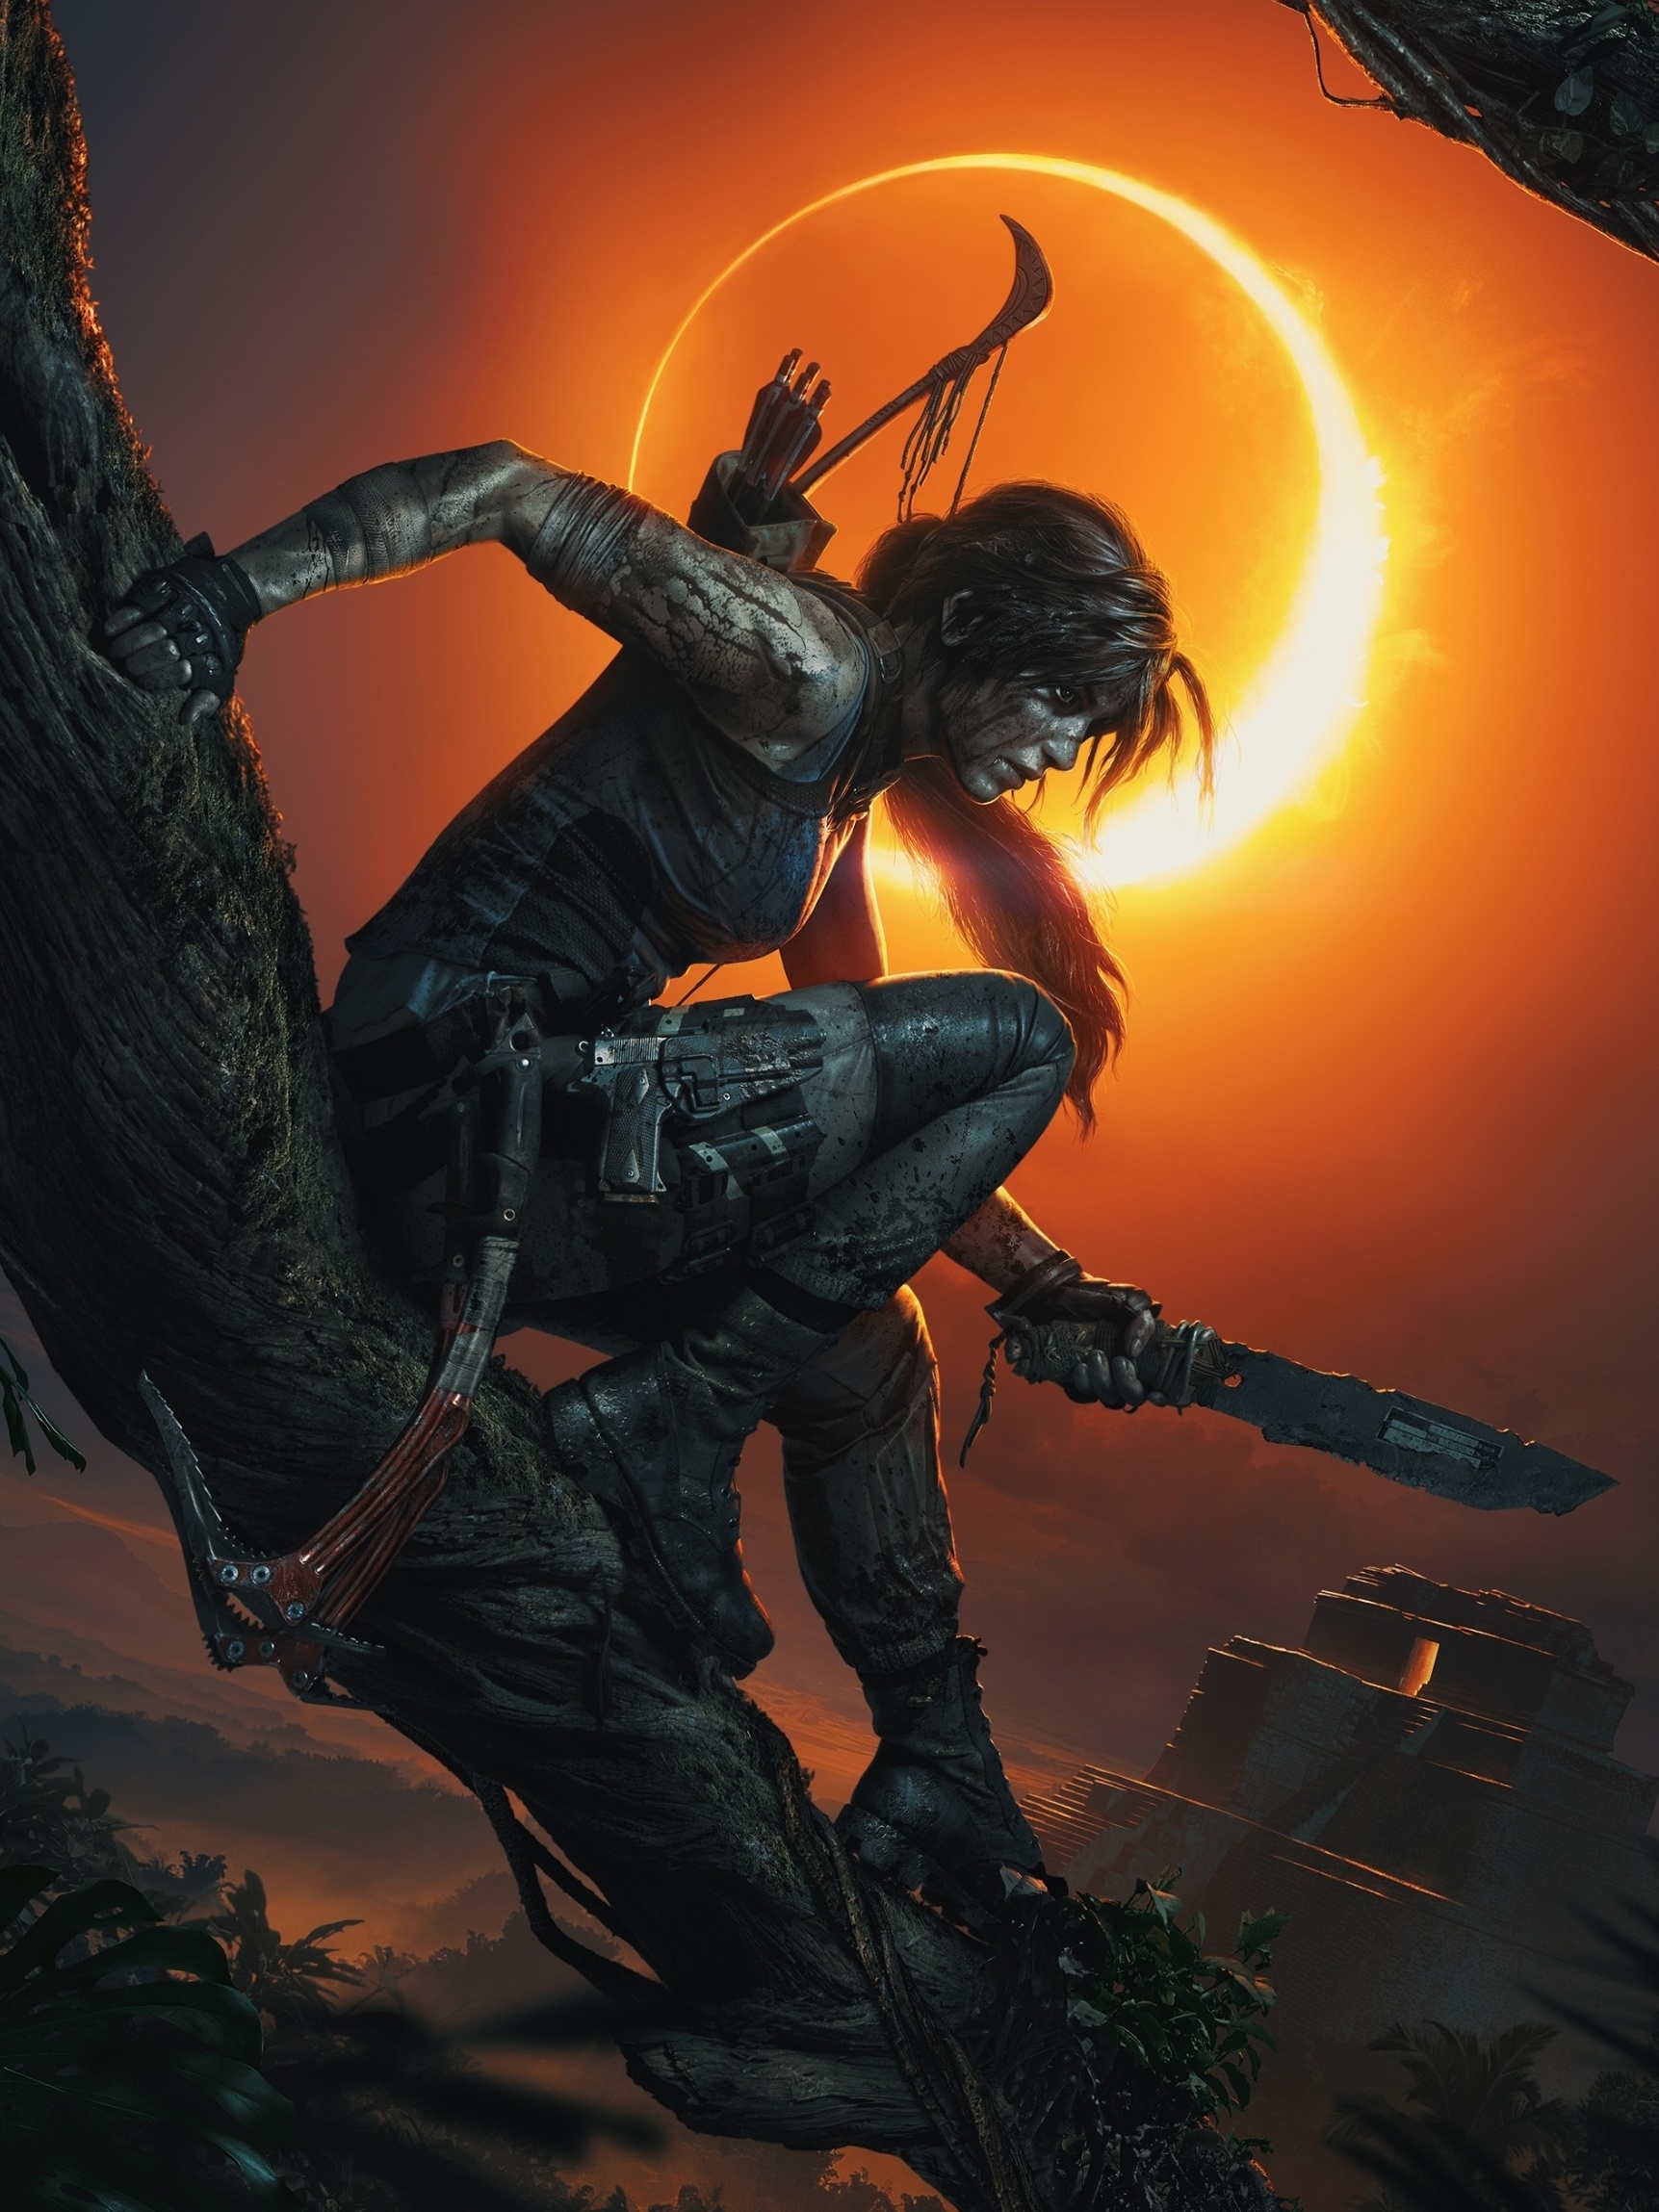 Tomb Raider Meio #filme #Celular #gameplay #detonado 